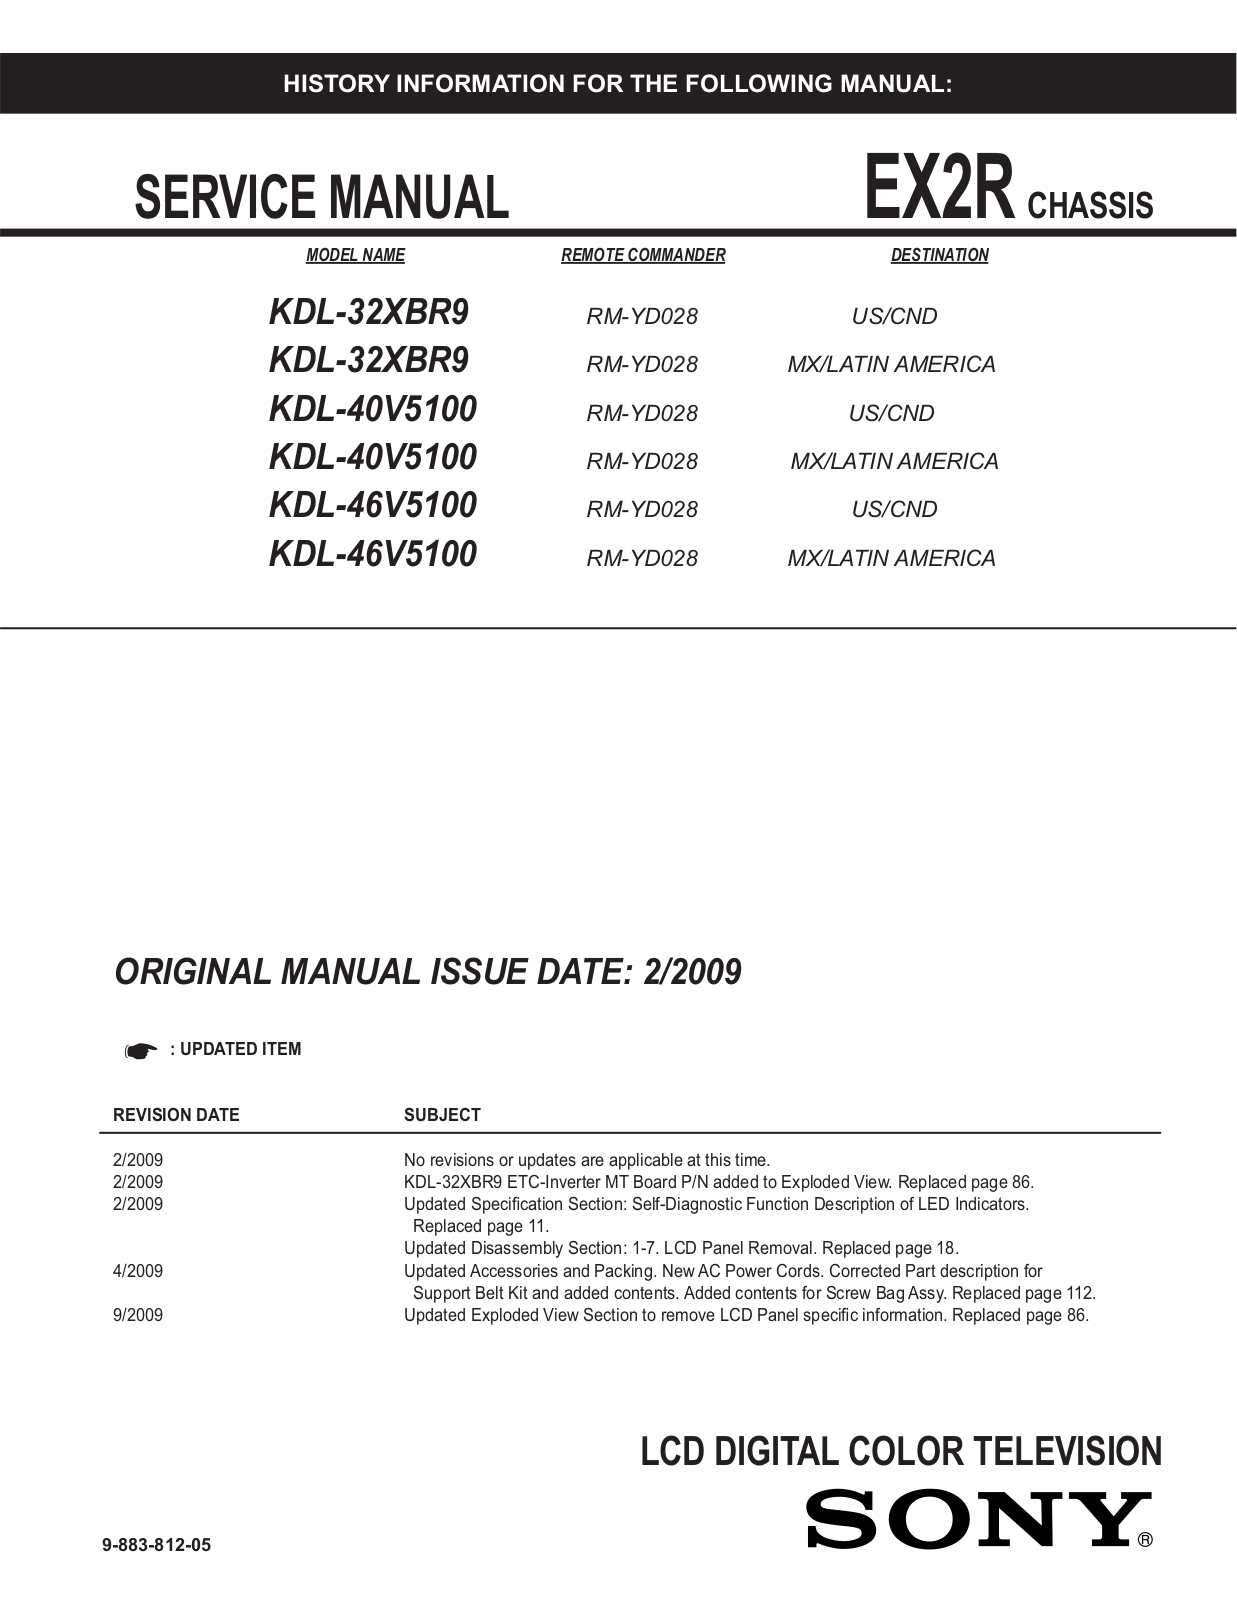 Sony KDL-32XBR9, KDL-40V5100, KDL-46V5100 schematic